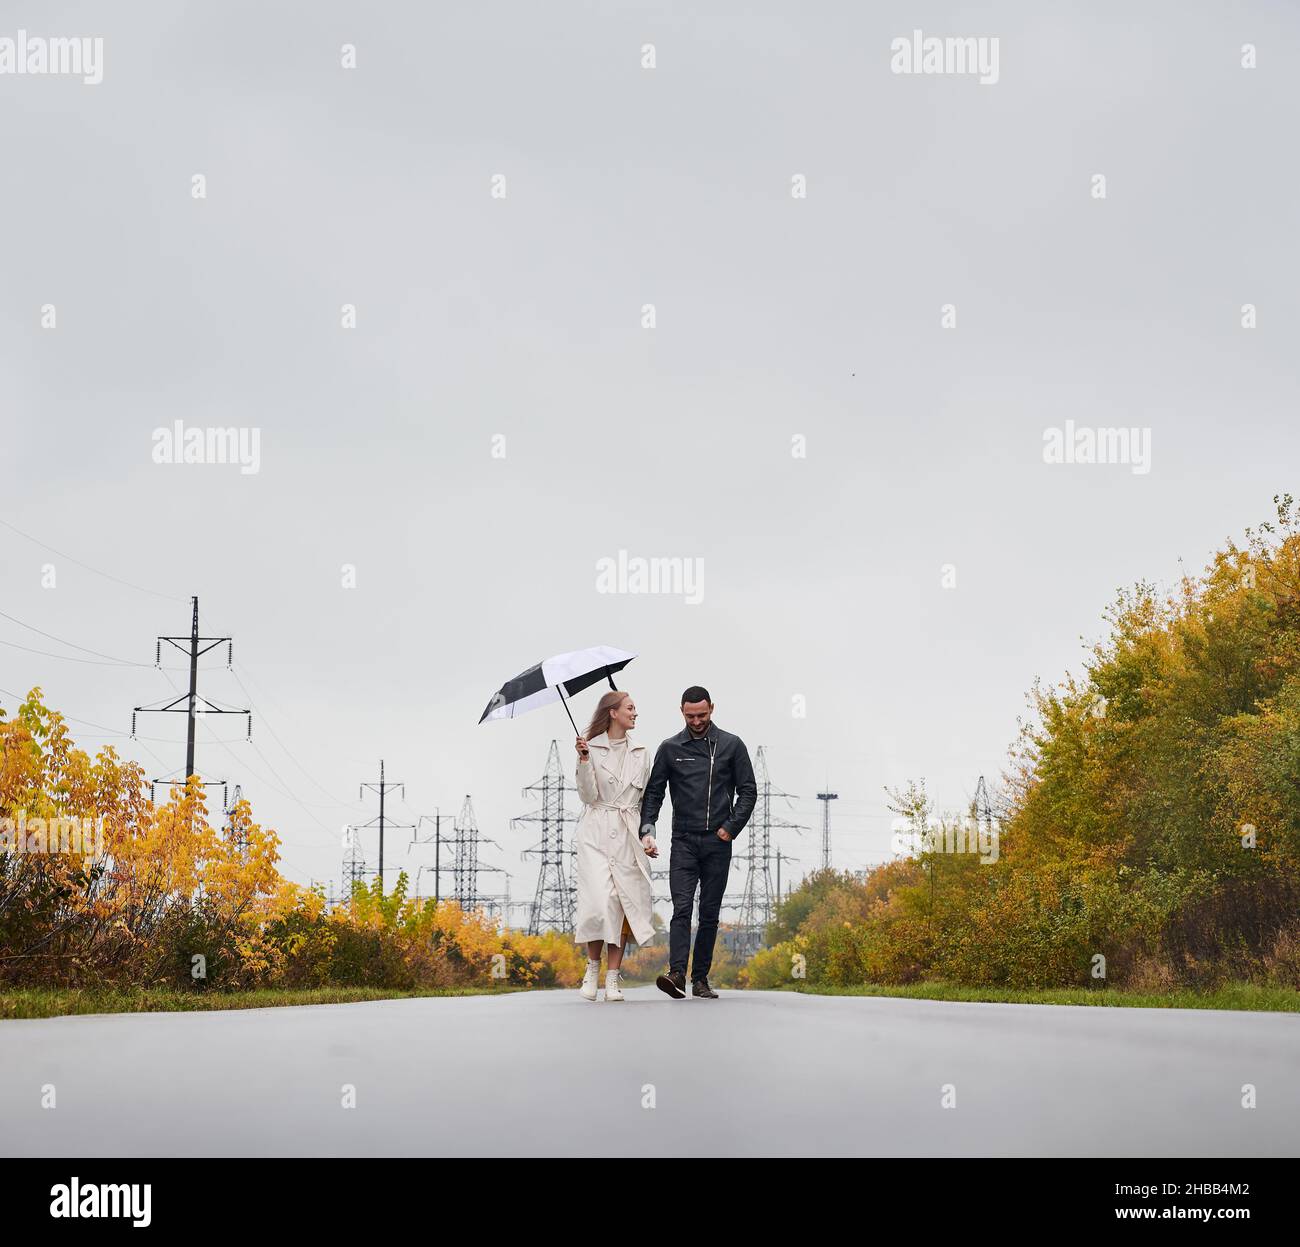 Un couple souriant et heureux marchant sur une route asphaltée tenant les bras.Fille regardant son amant, tenant un parapluie dans une main.En arrière-plan, les tours électriques et le ciel gris, les buissons jaunes des deux côtés de la route. Banque D'Images